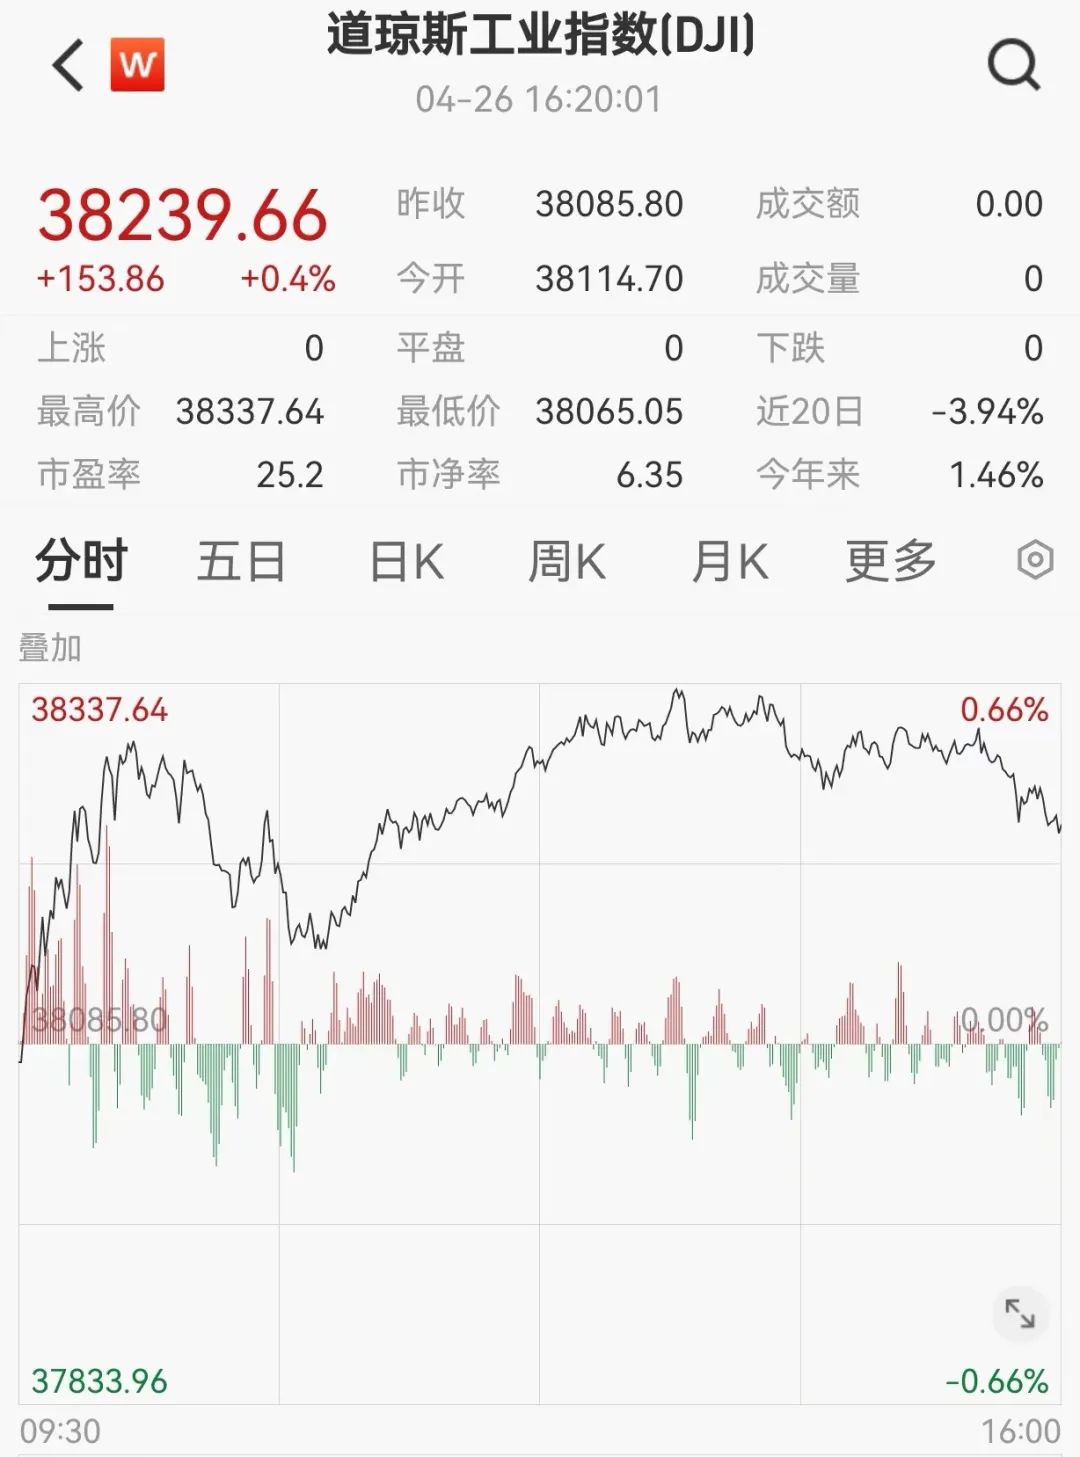 英伟达又火了，暴涨2.1万亿元！日元暴跌，34年新低